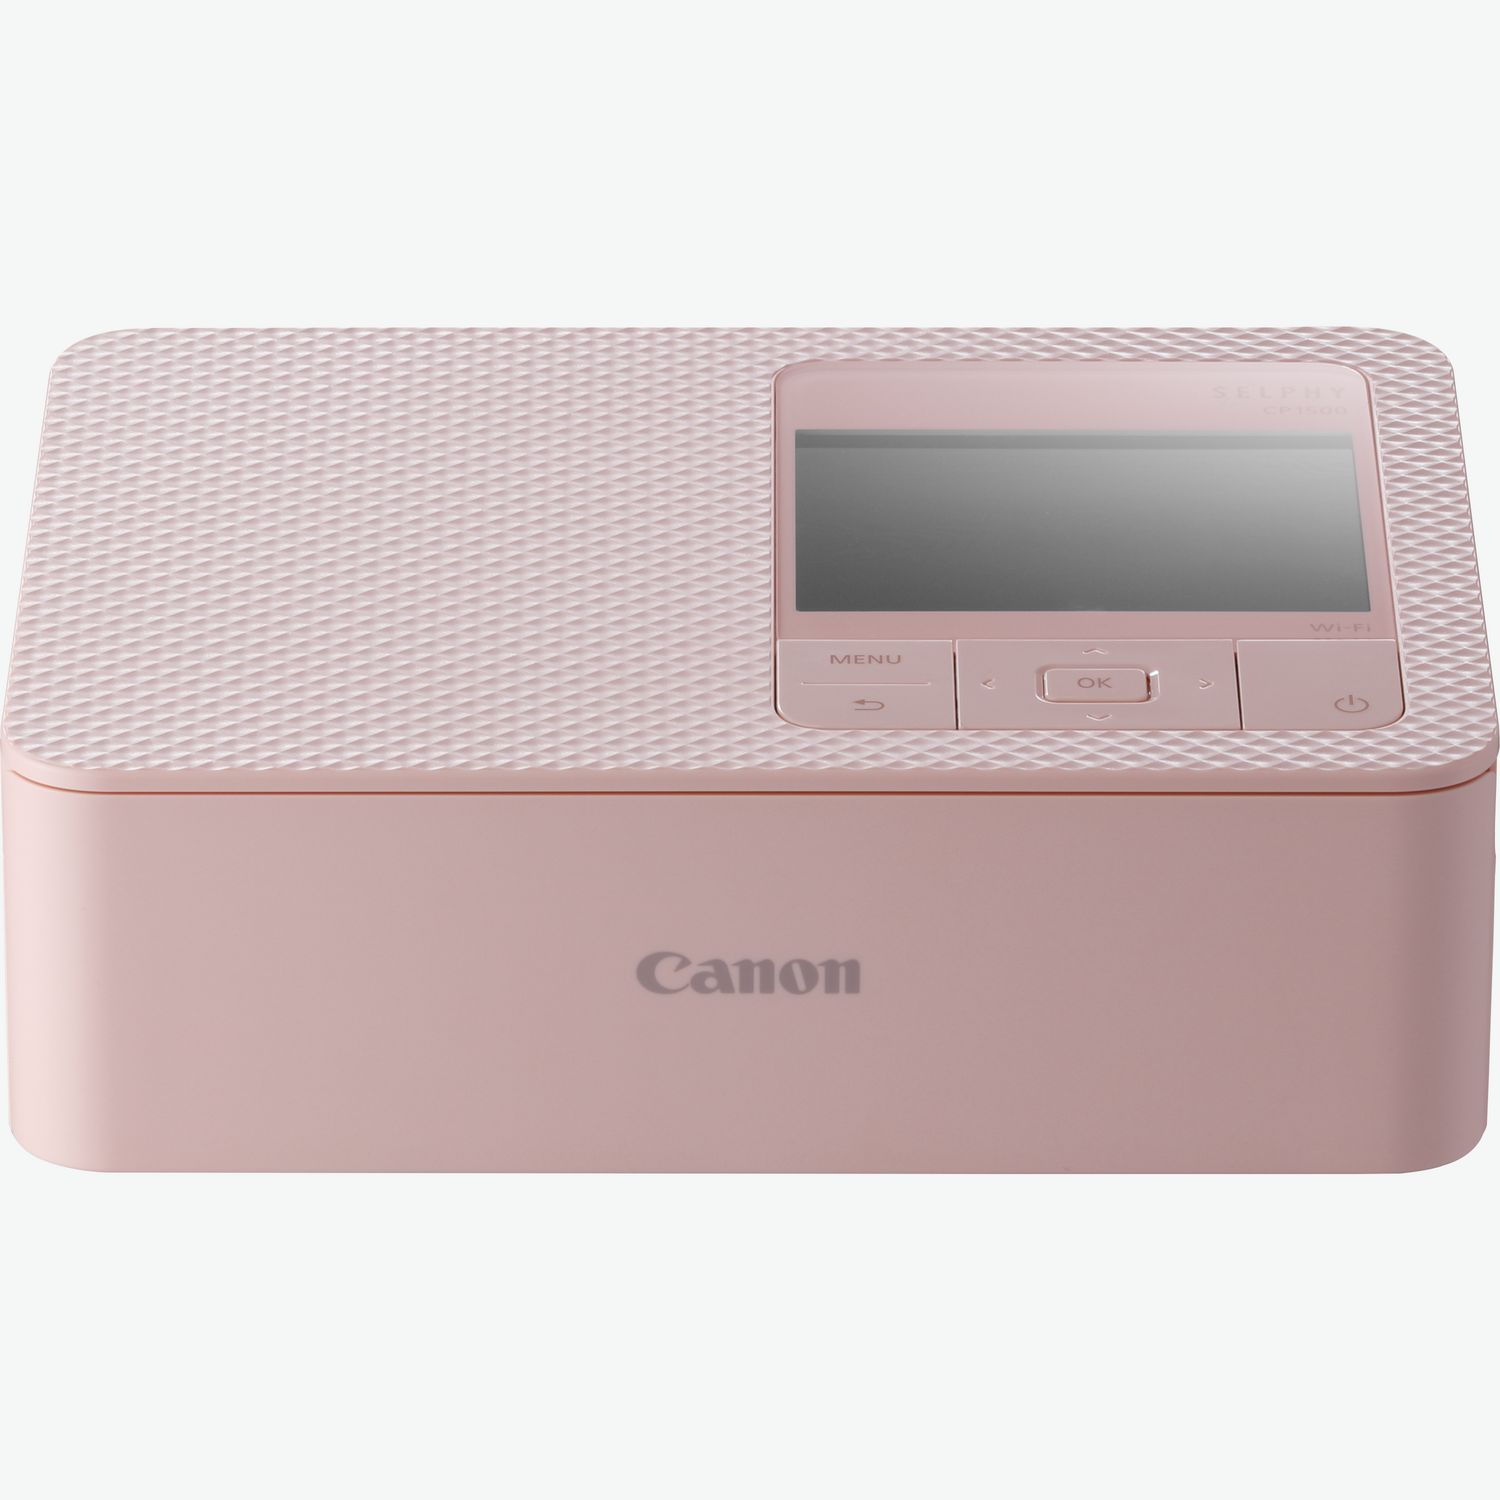  Canon SELPHY CP1300 - Impresora fotográfica compacta